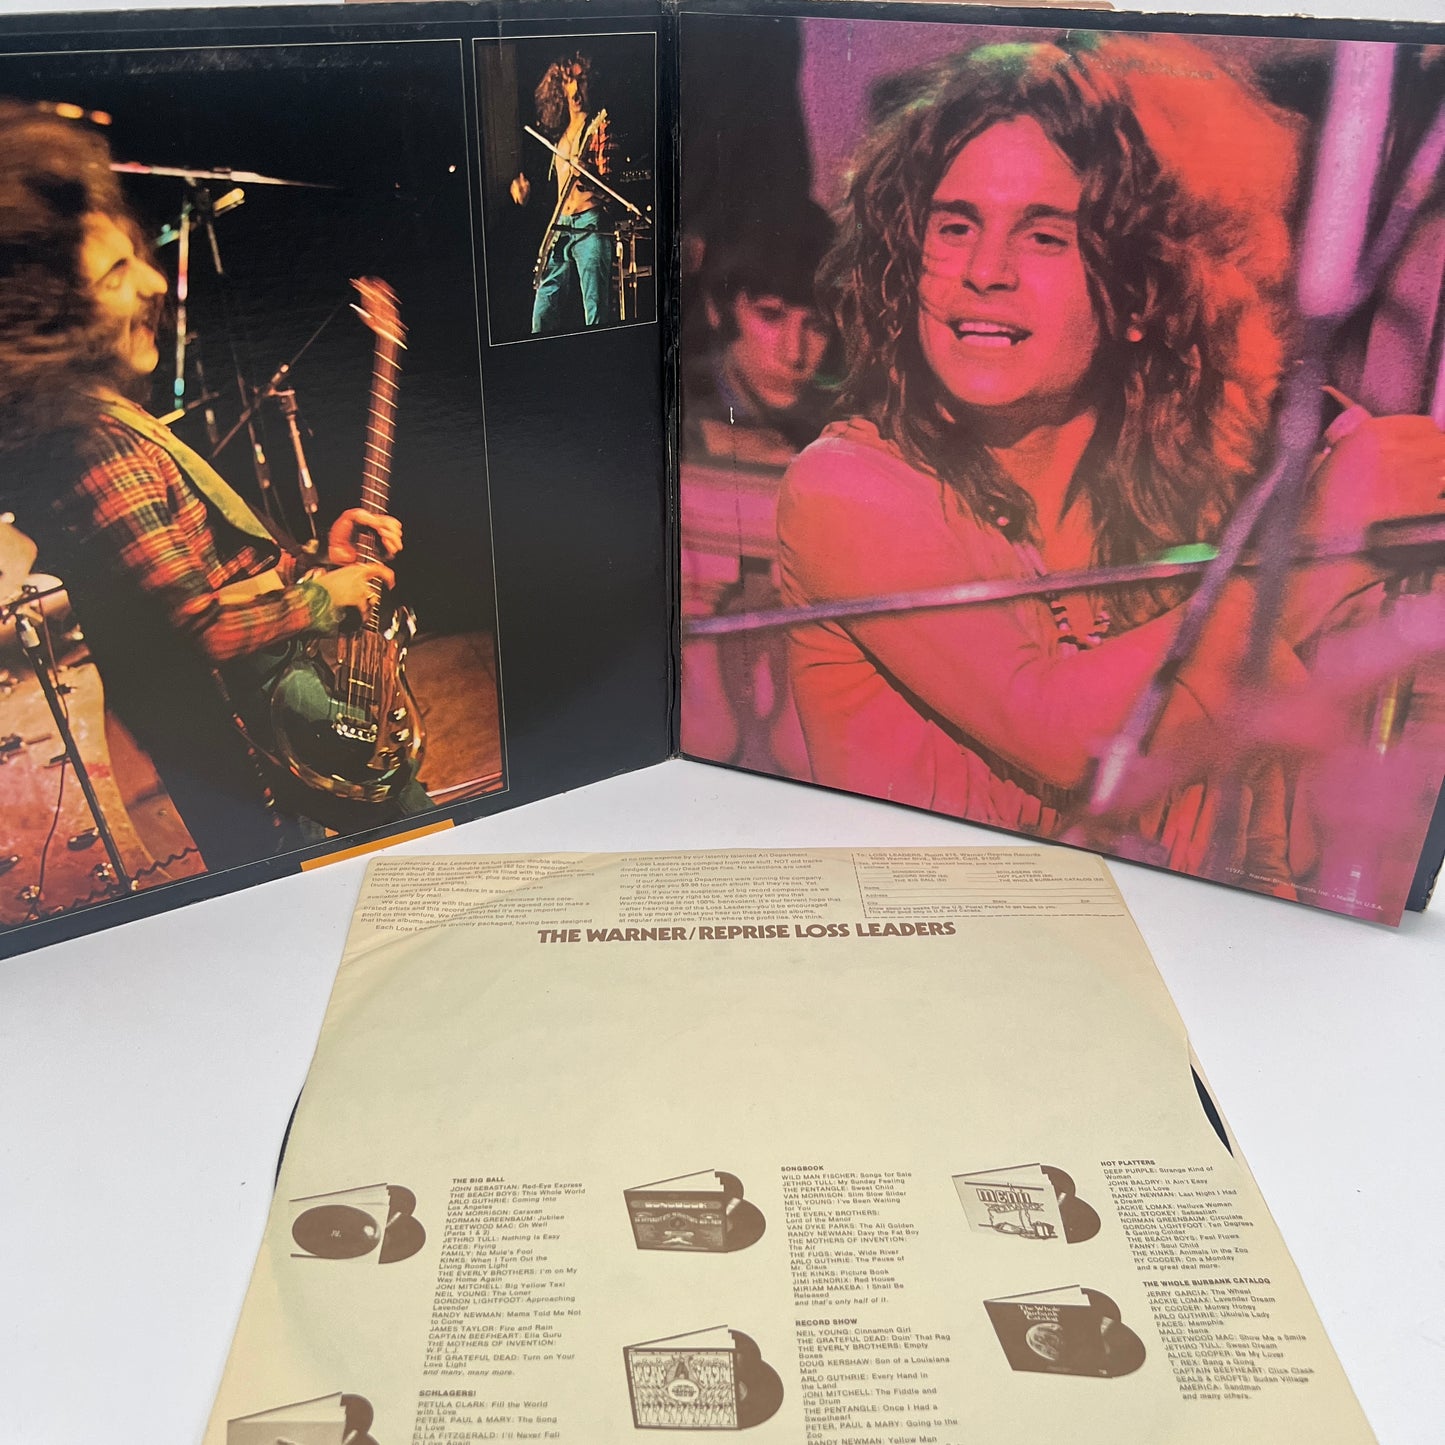 Black Sabbath - Vol. 4 Vinyl LP Original 1st Press Green Label Santa Maria